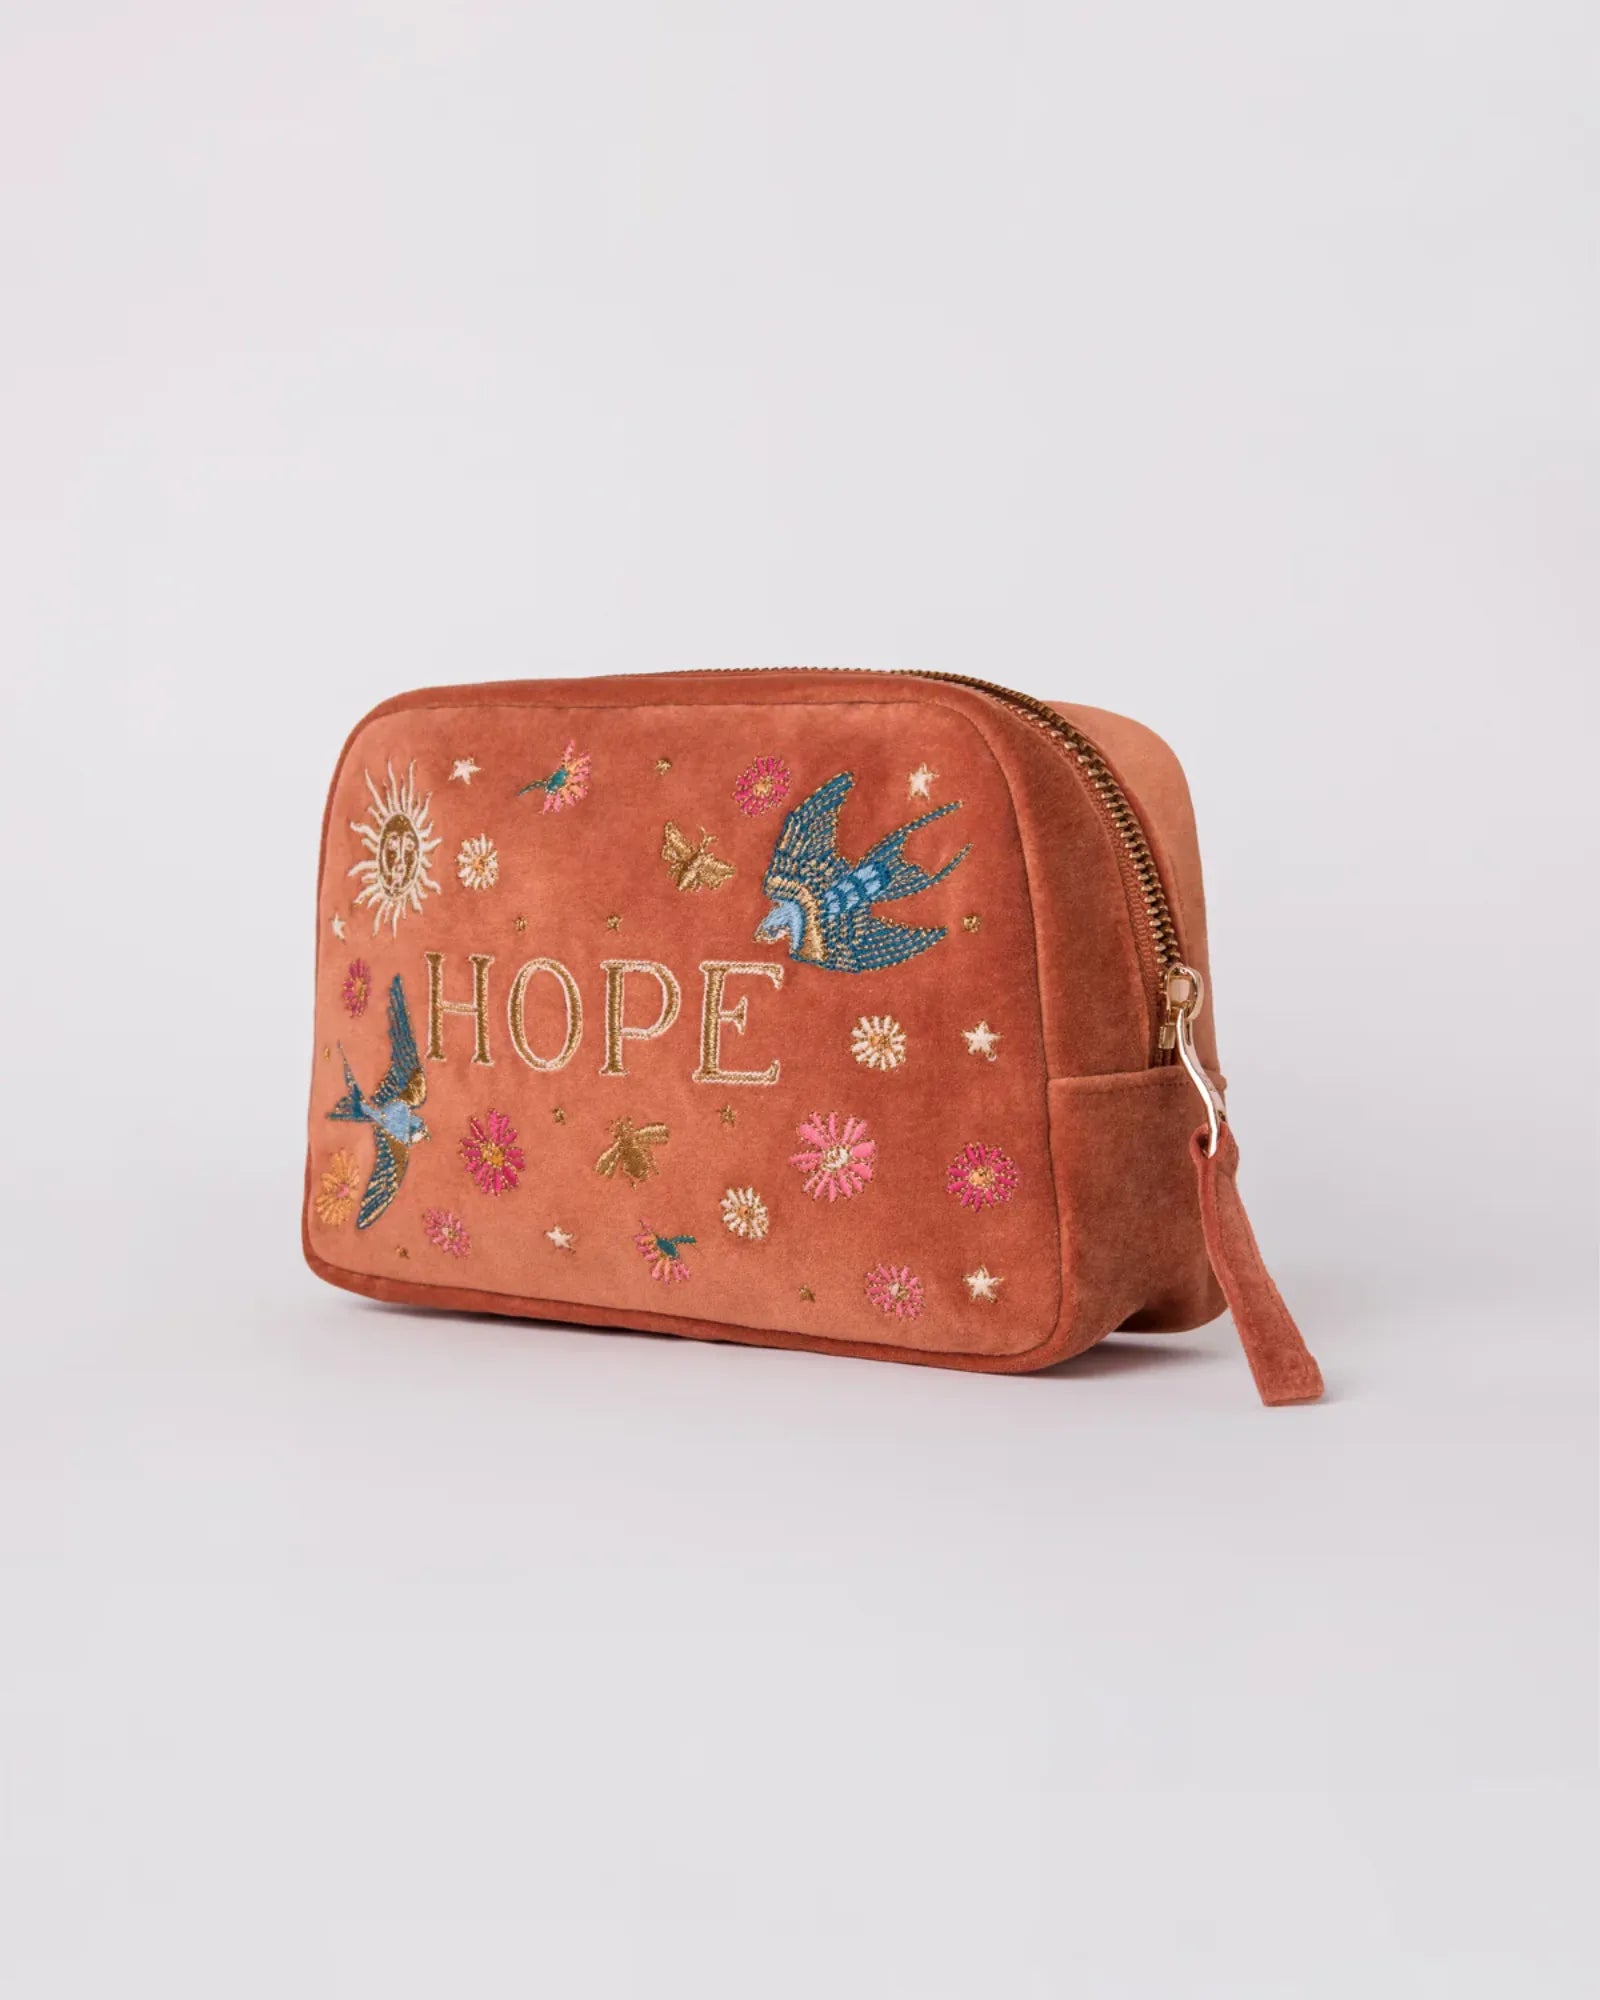 Hope Cosmetics Bag - Rust